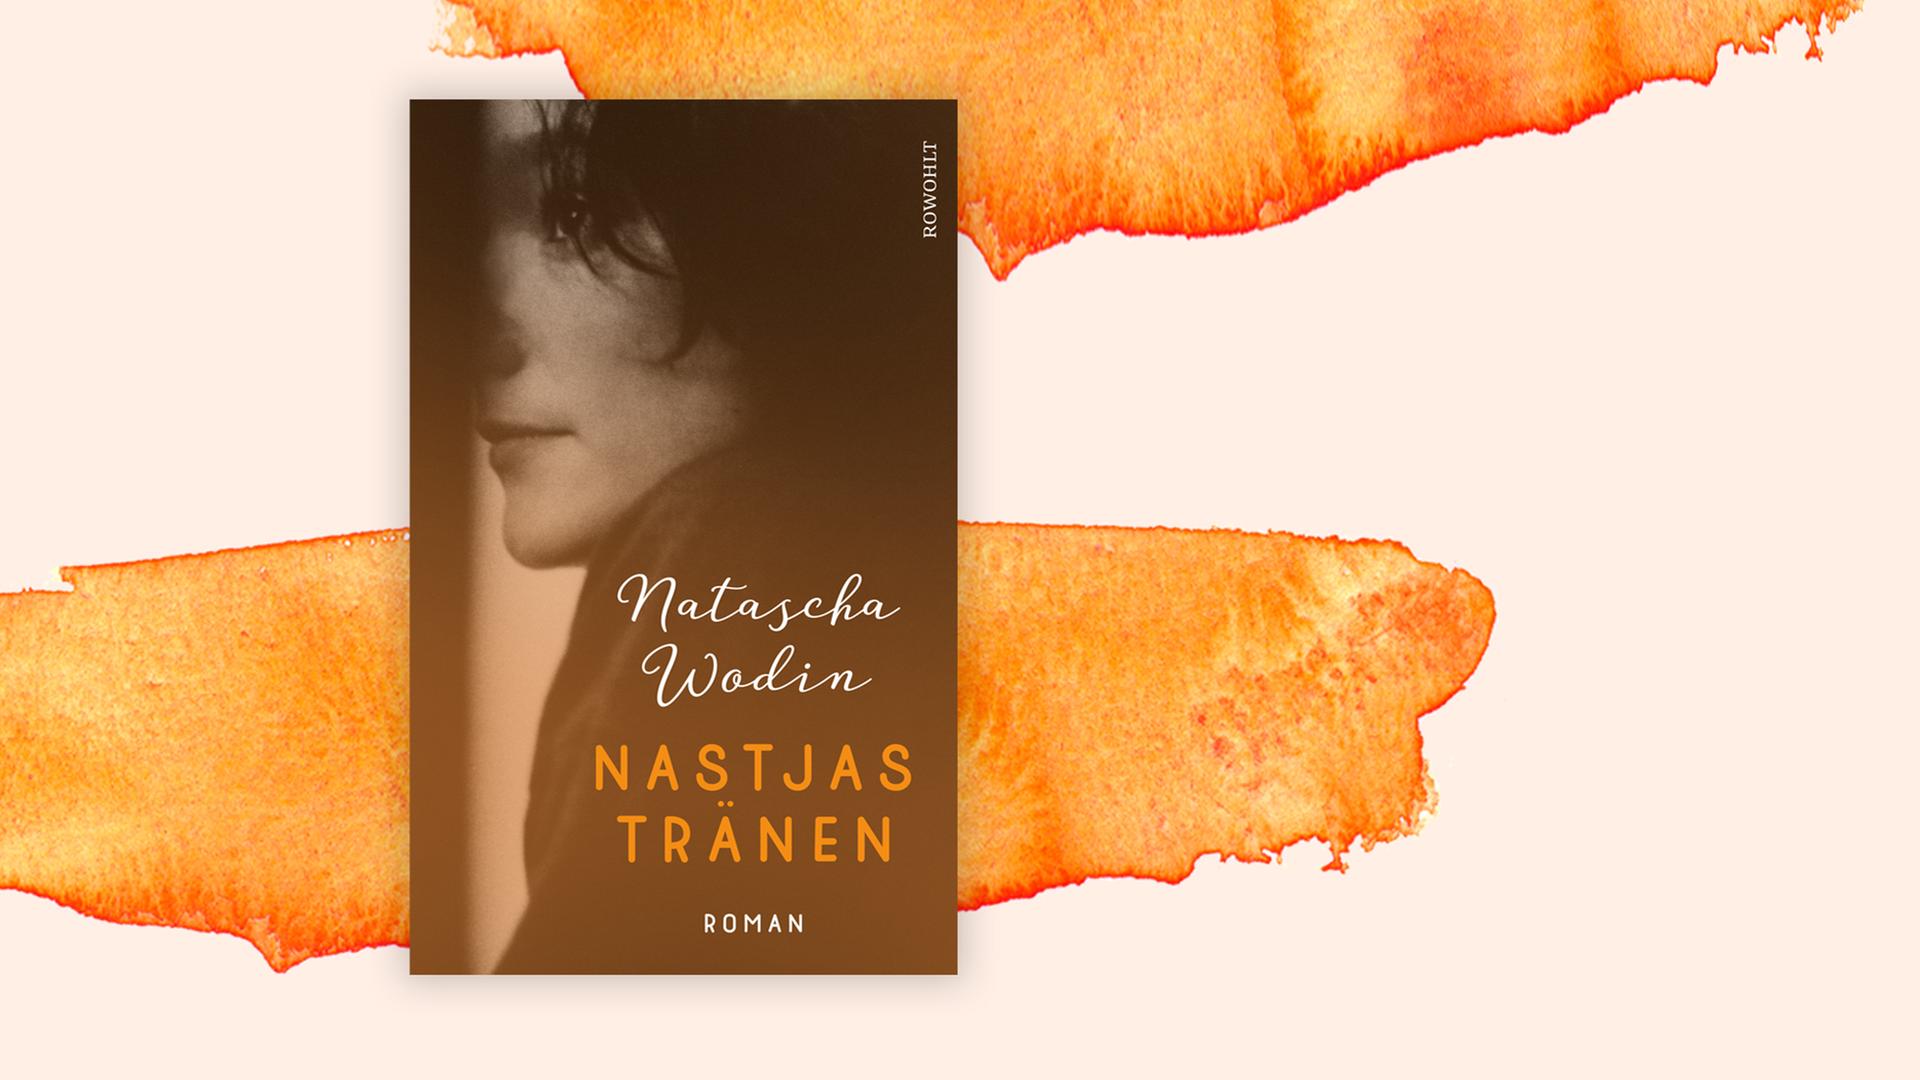 Buchcover: "Nastjas Tränen" von Natascha Wodin